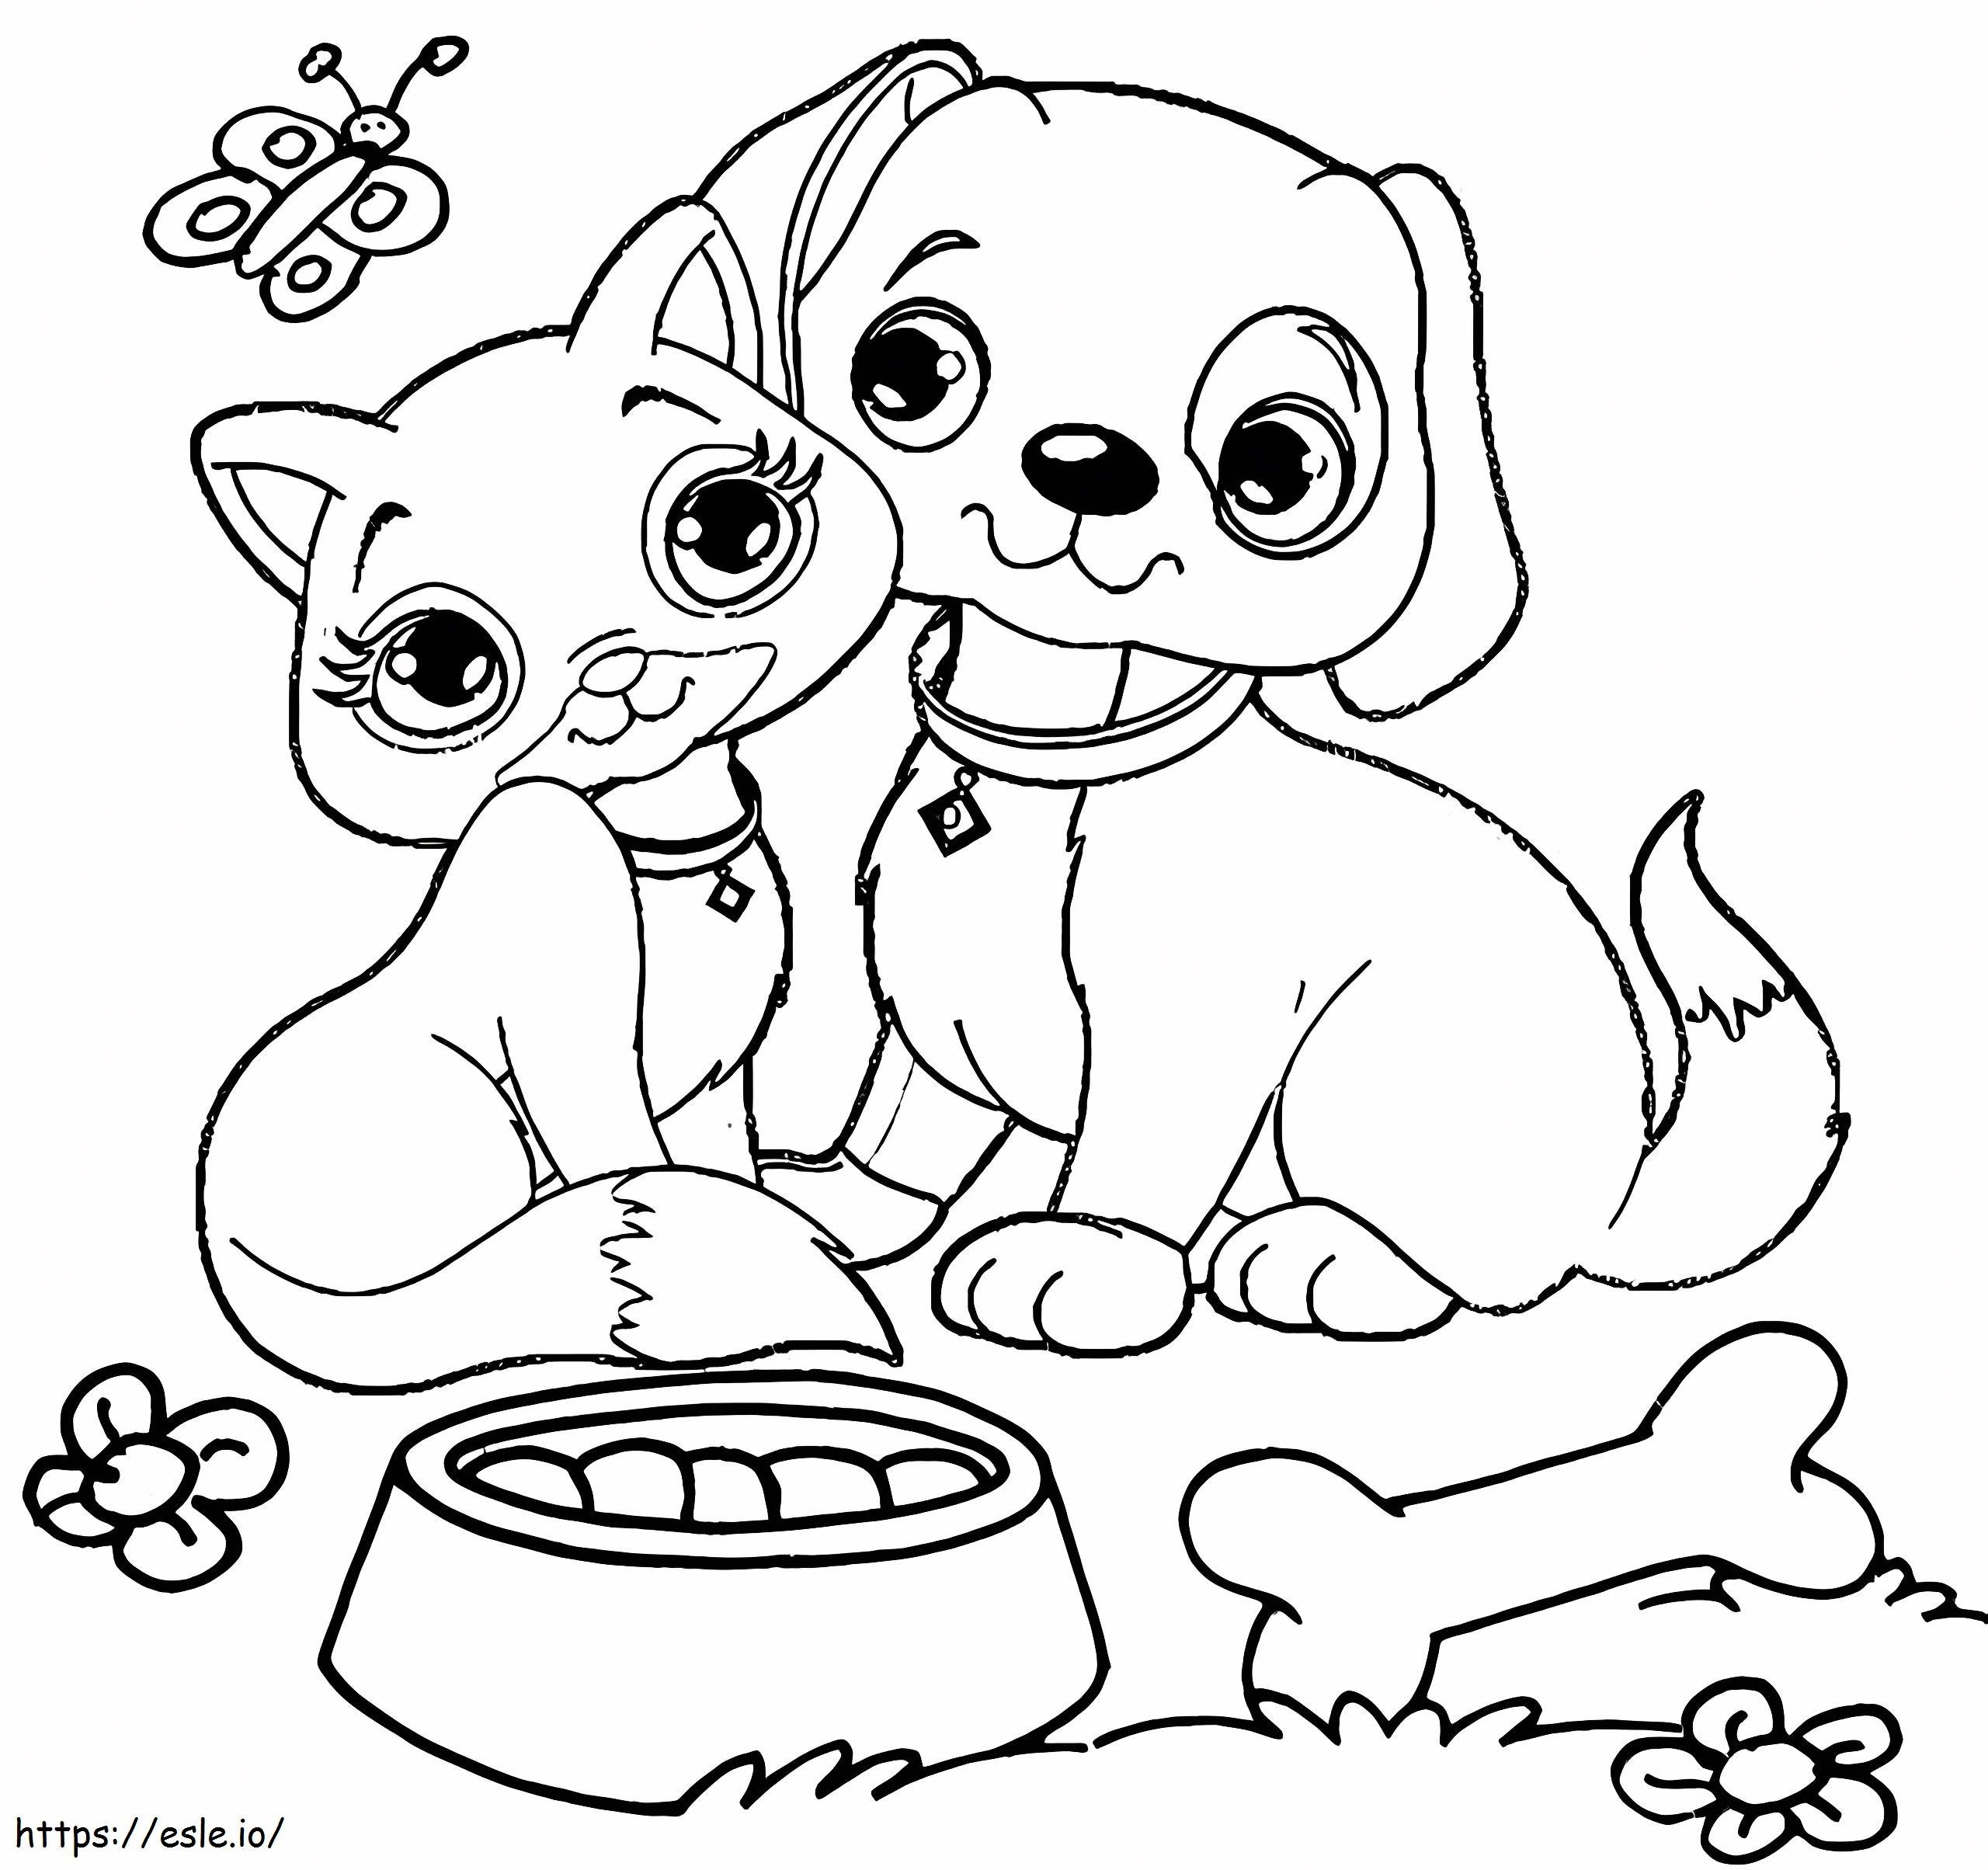 Perro y gato gratis para colorear